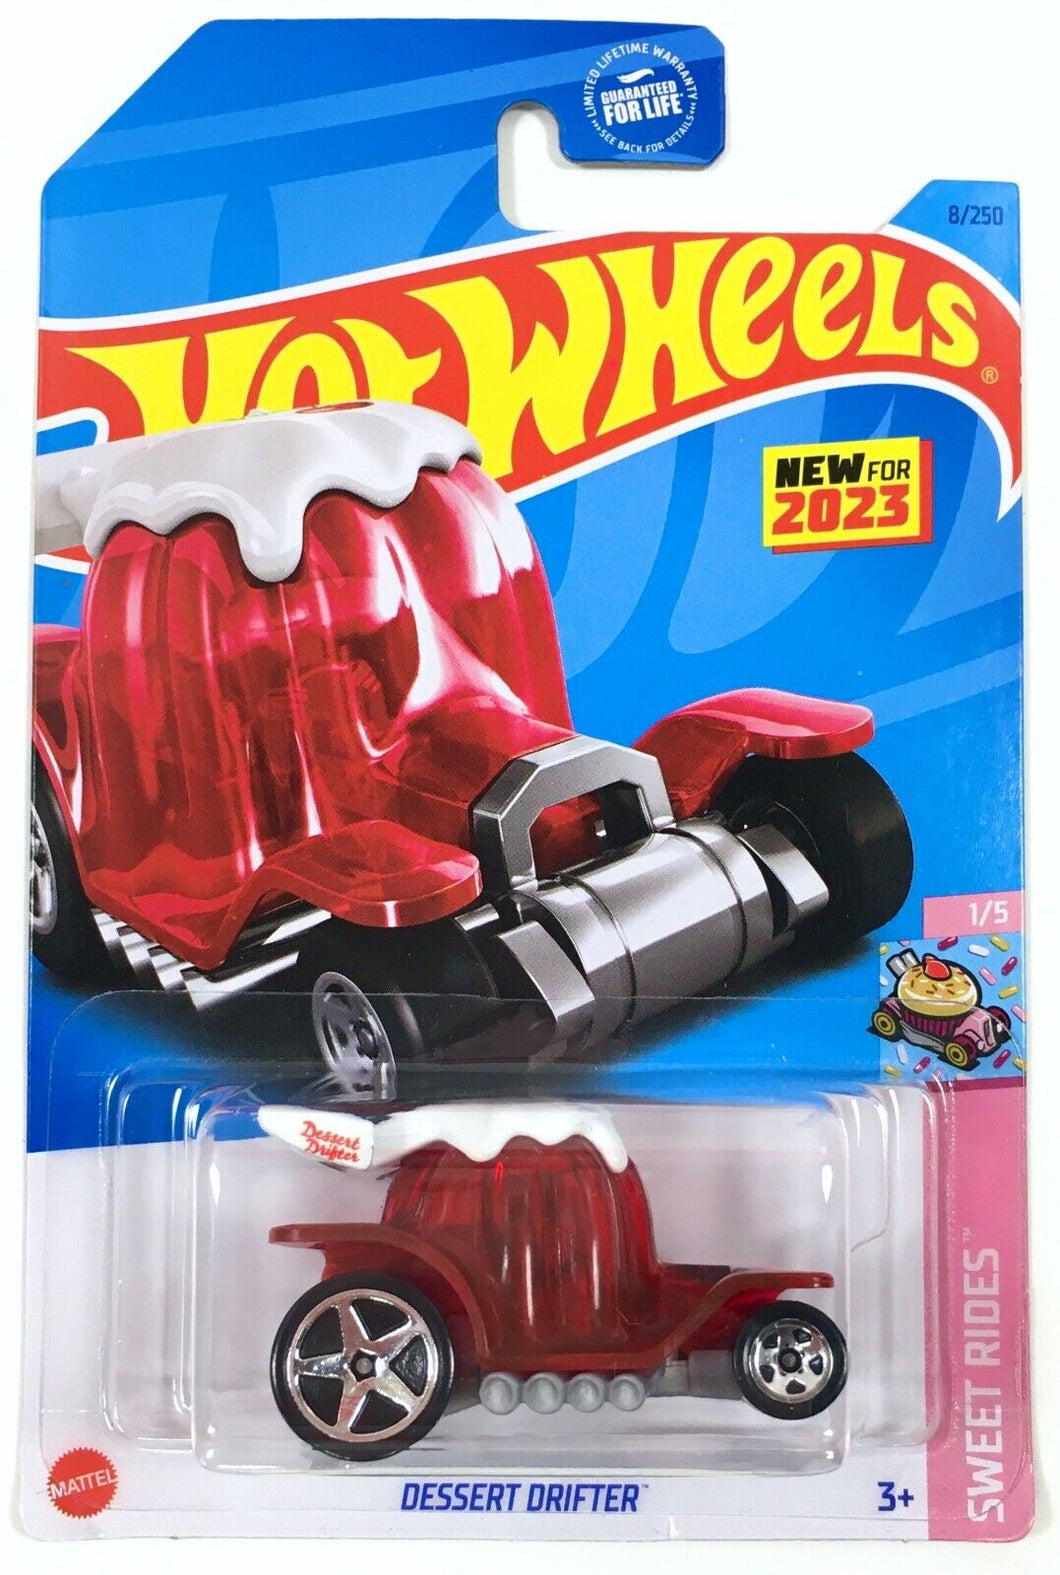 Hot Wheels Dessert Drifter Sweet Rides 1/5 008/250 - Assorted Colors